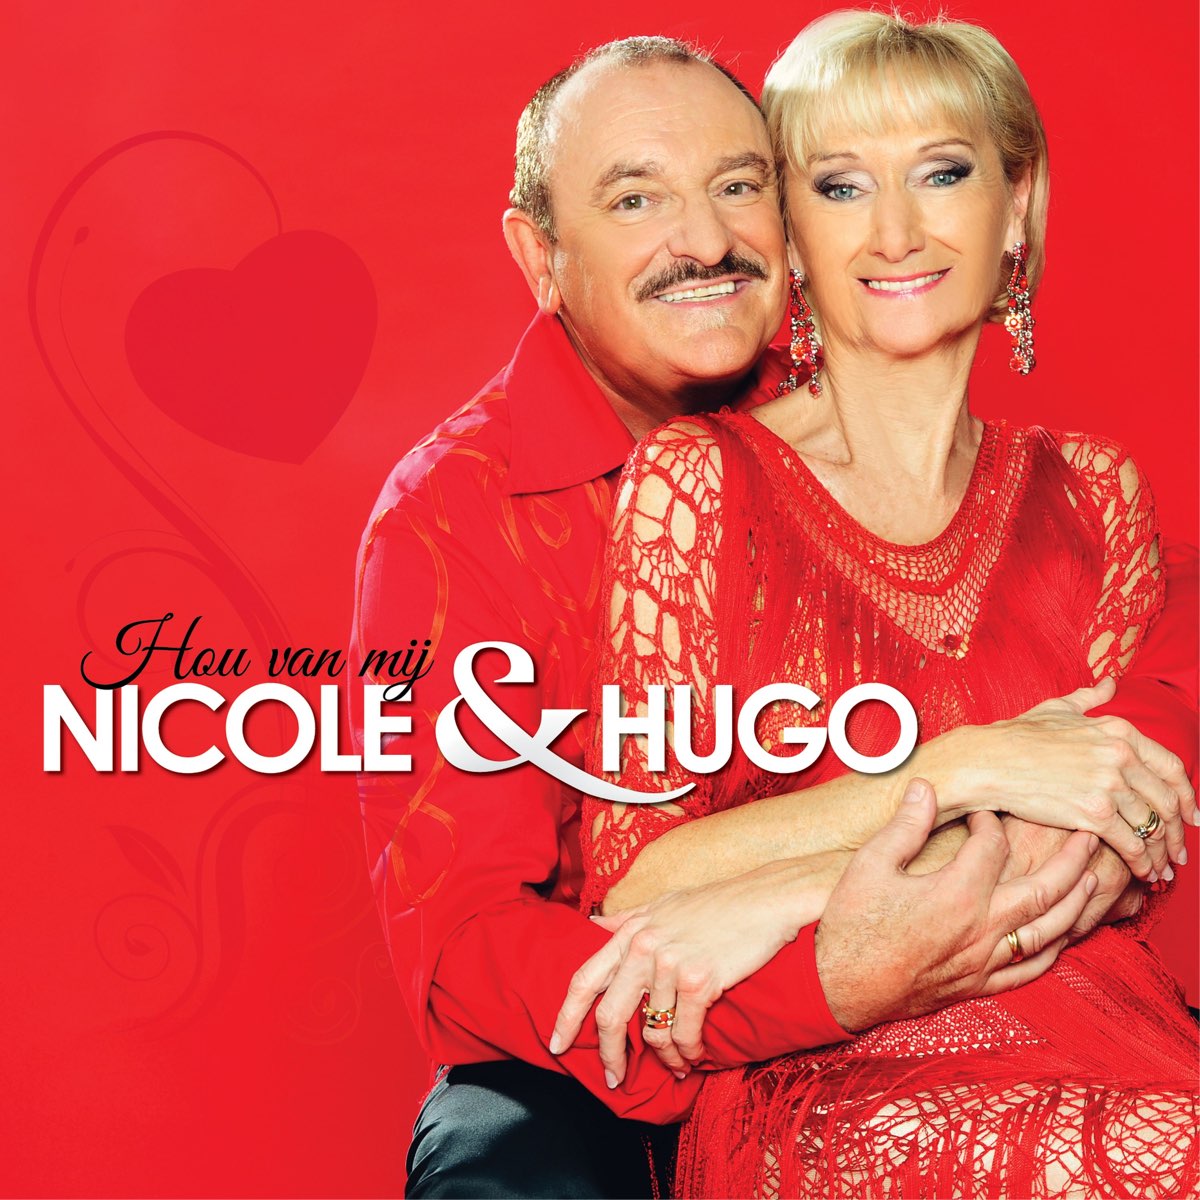 Nicole hugo morgen. Nicole & Hugo. Nicole Hugo Goeiemorgen. Nicole & Hugo бельгийский дуэт.